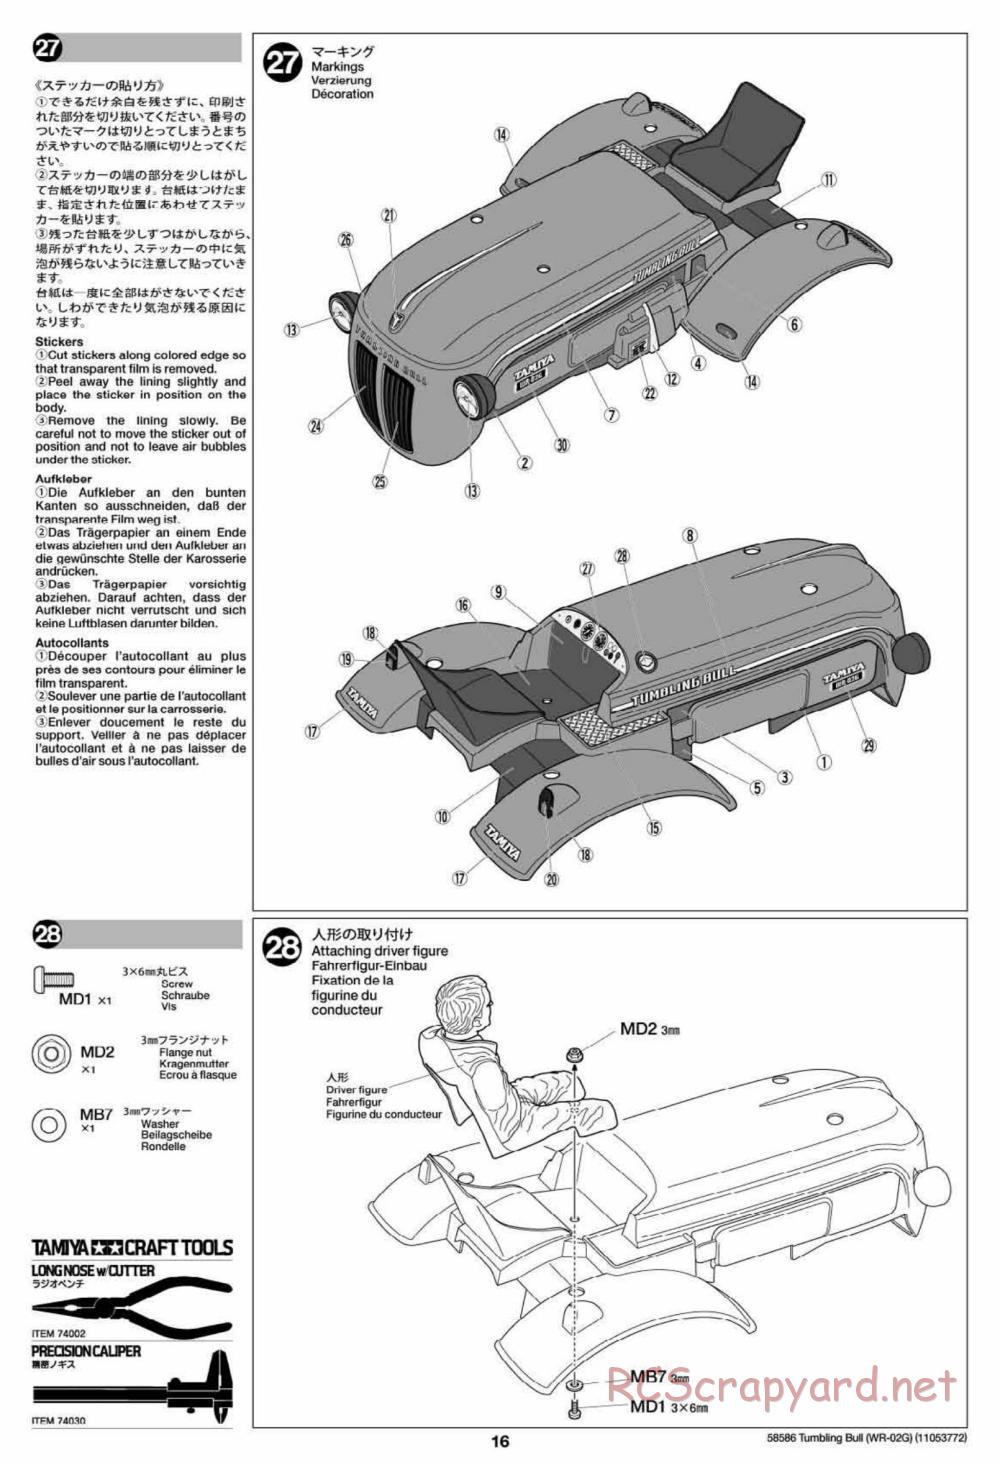 Tamiya - Tumbling Bull Chassis - Manual - Page 16